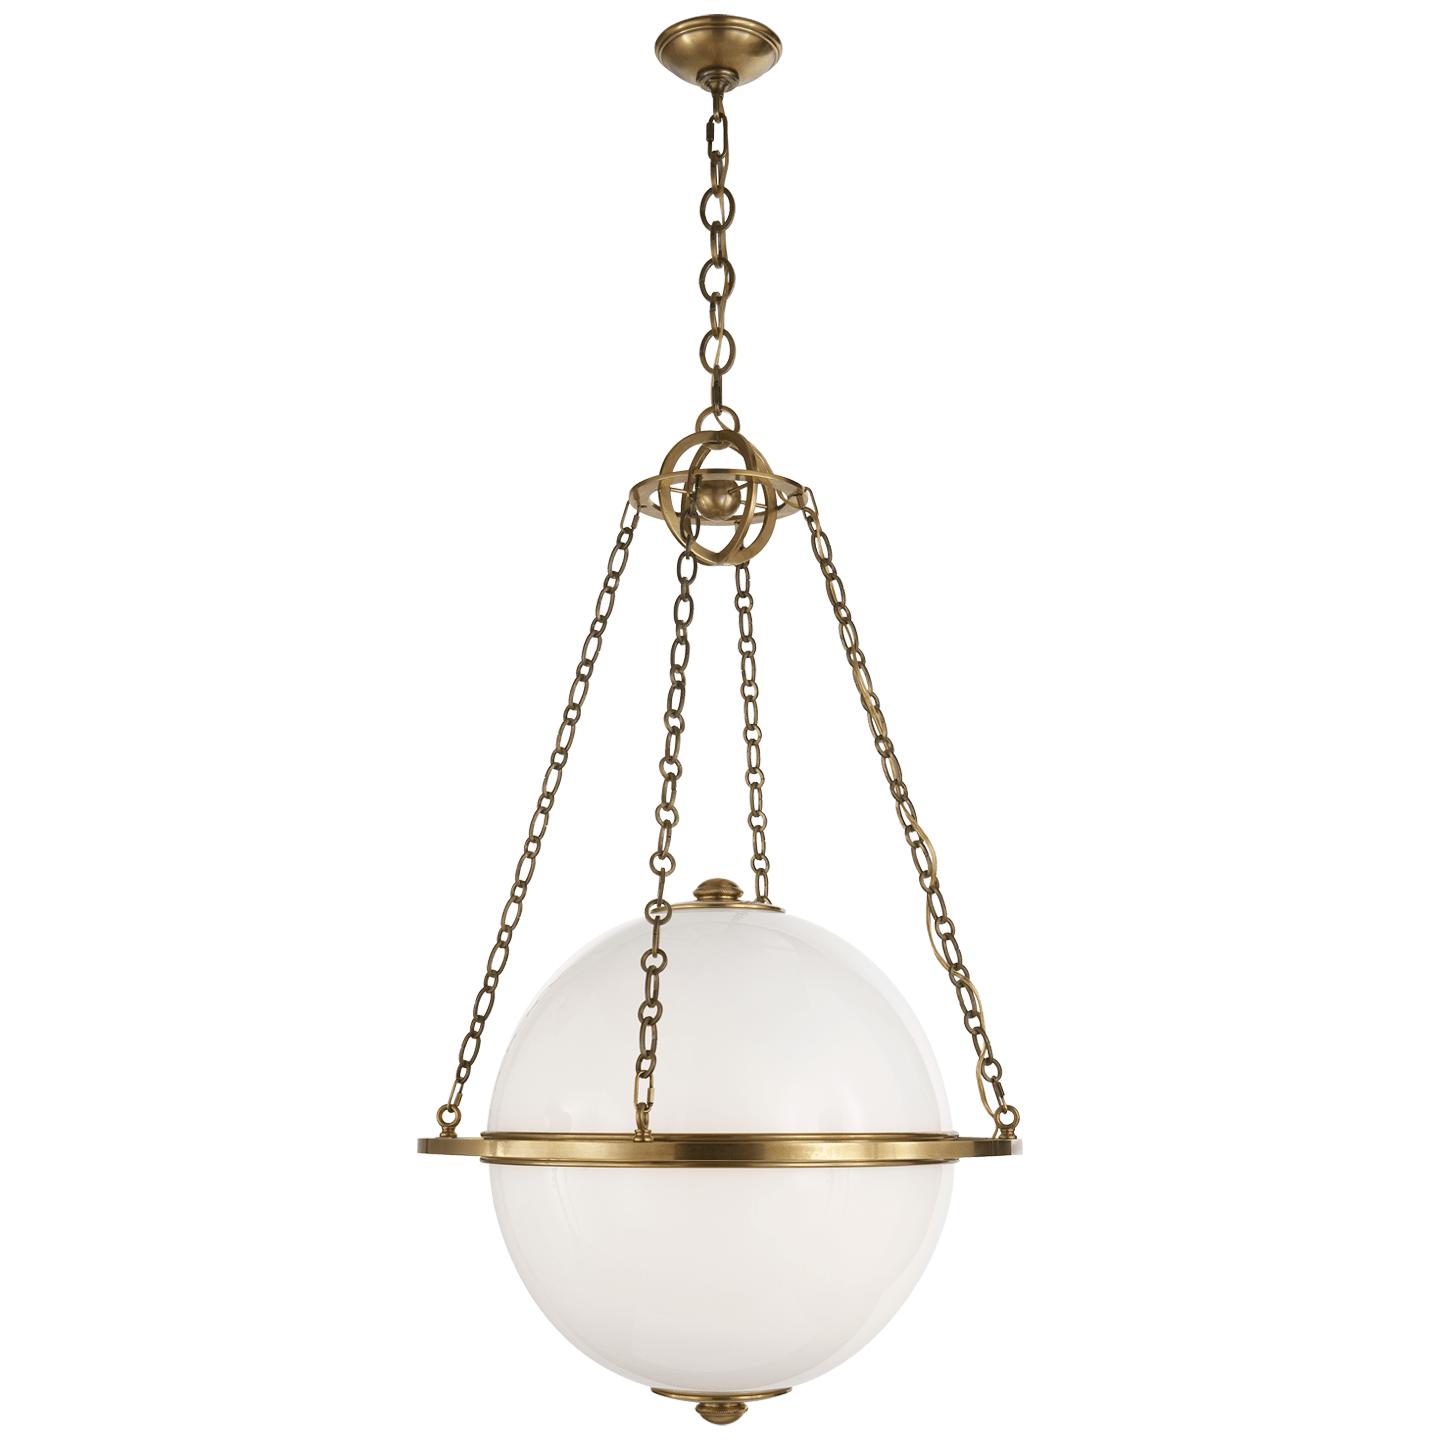 Купить Подвесной светильник Modern Globe Lantern в интернет-магазине roooms.ru